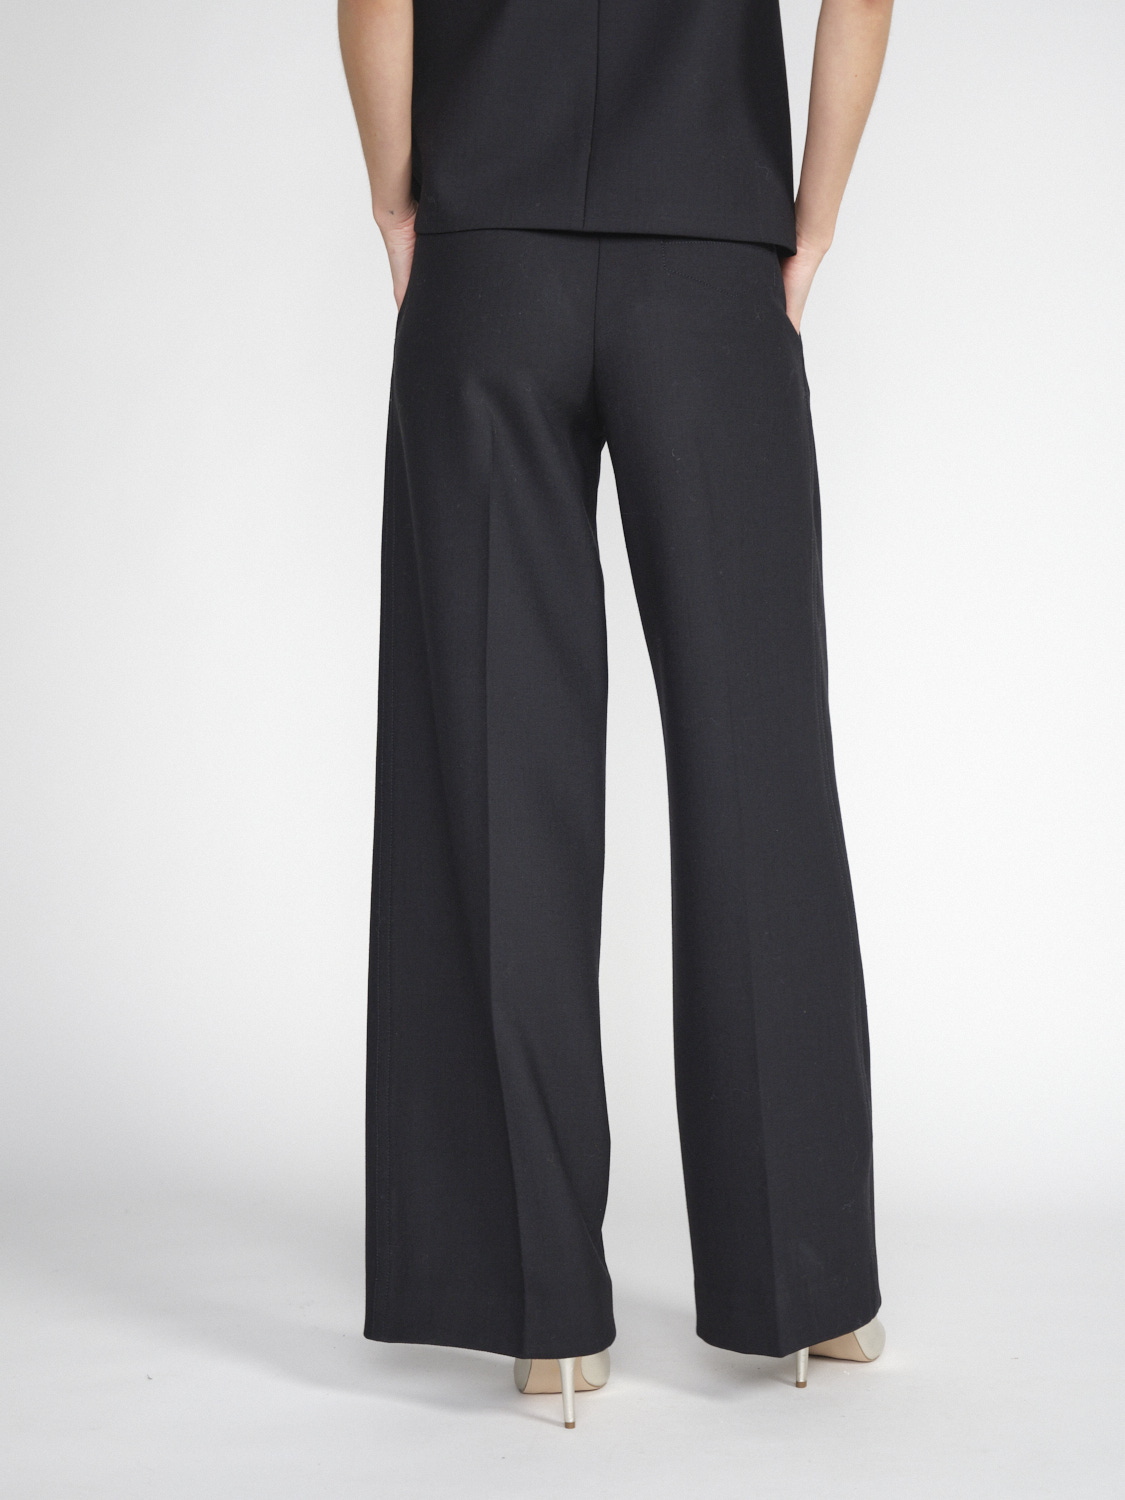 Lorena Antoniazzi Stretchy pleated trousers in virgin wool  black 34